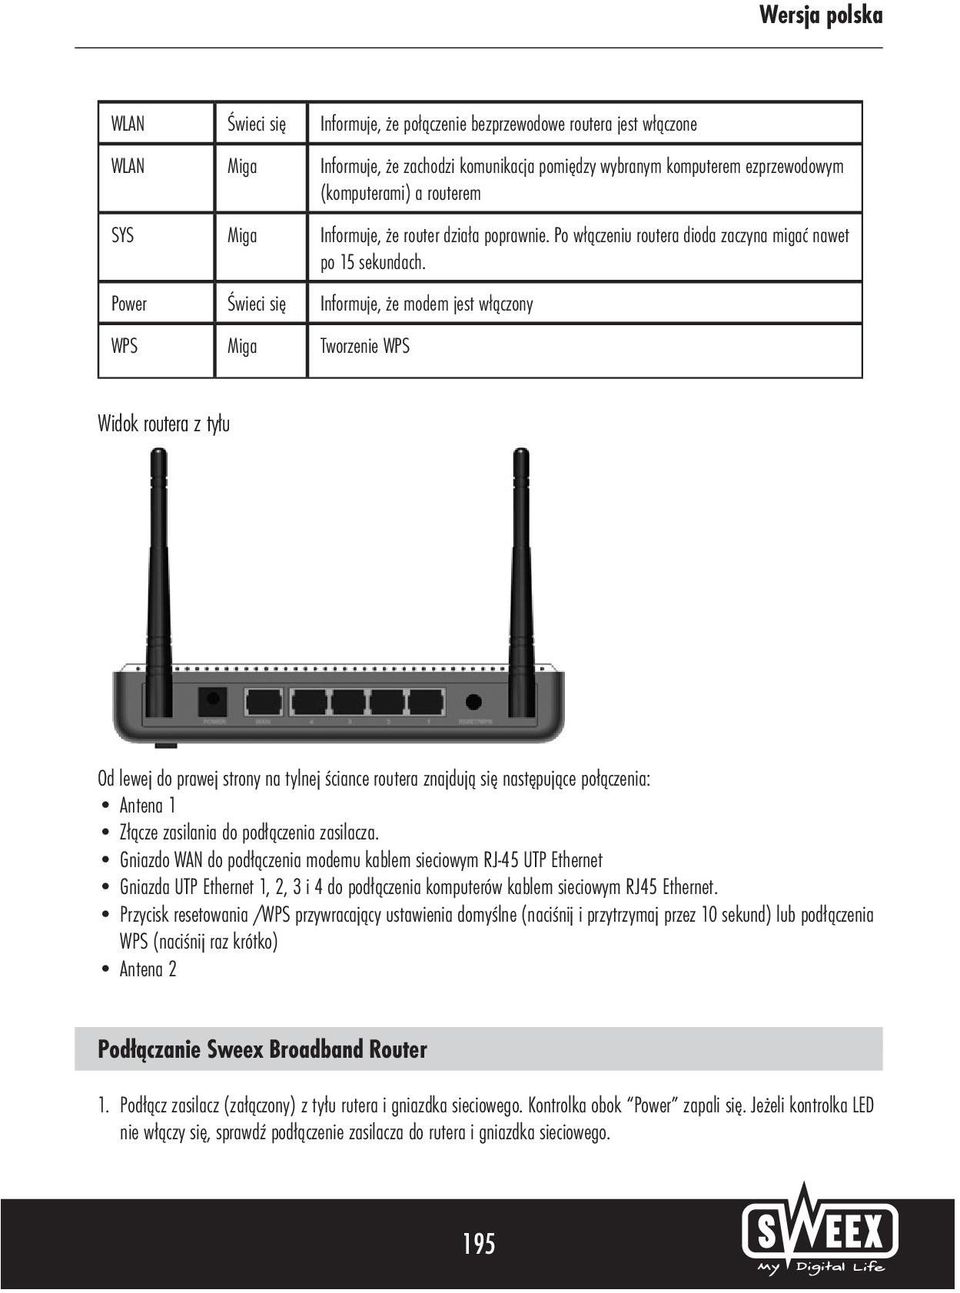 Power Świeci się Informuje, że modem jest włączony WPS Miga Tworzenie WPS Widok routera z tyłu Od lewej do prawej strony na tylnej ściance routera znajdują się następujące połączenia: Antena 1 Złącze